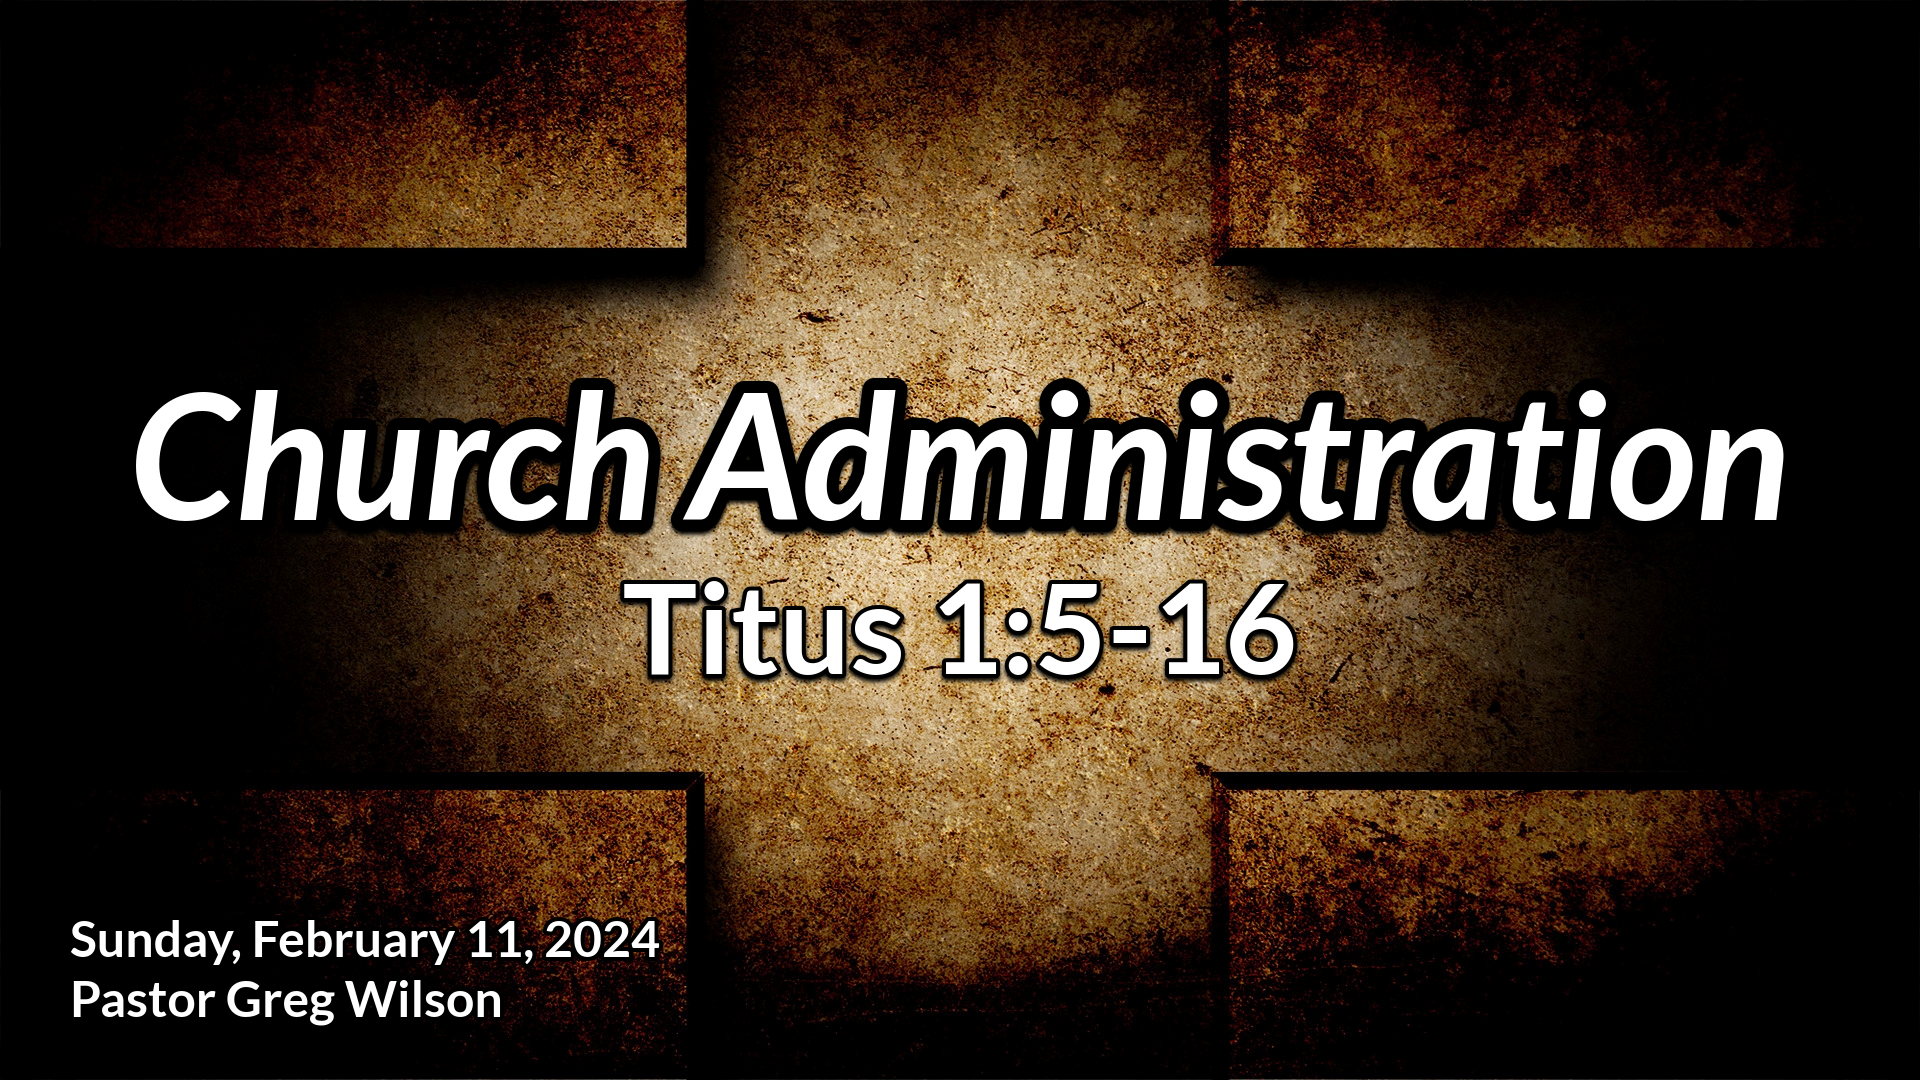 "Church Administration"